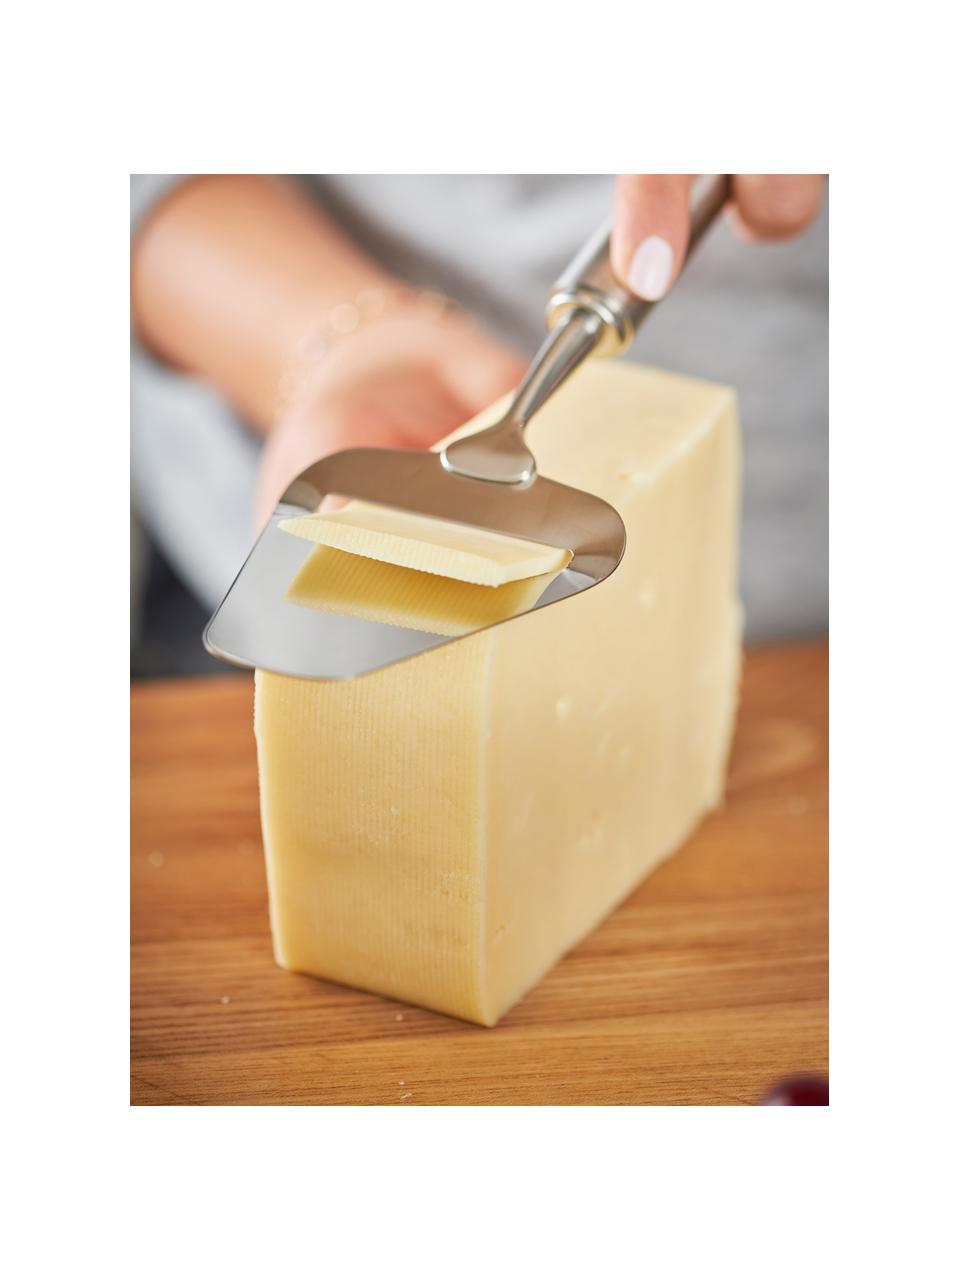 Râpe à fromage acier inoxydable Perfection, Acier inoxydable 18/10, Couleur argentée, larg. 8 x long. 24 cm